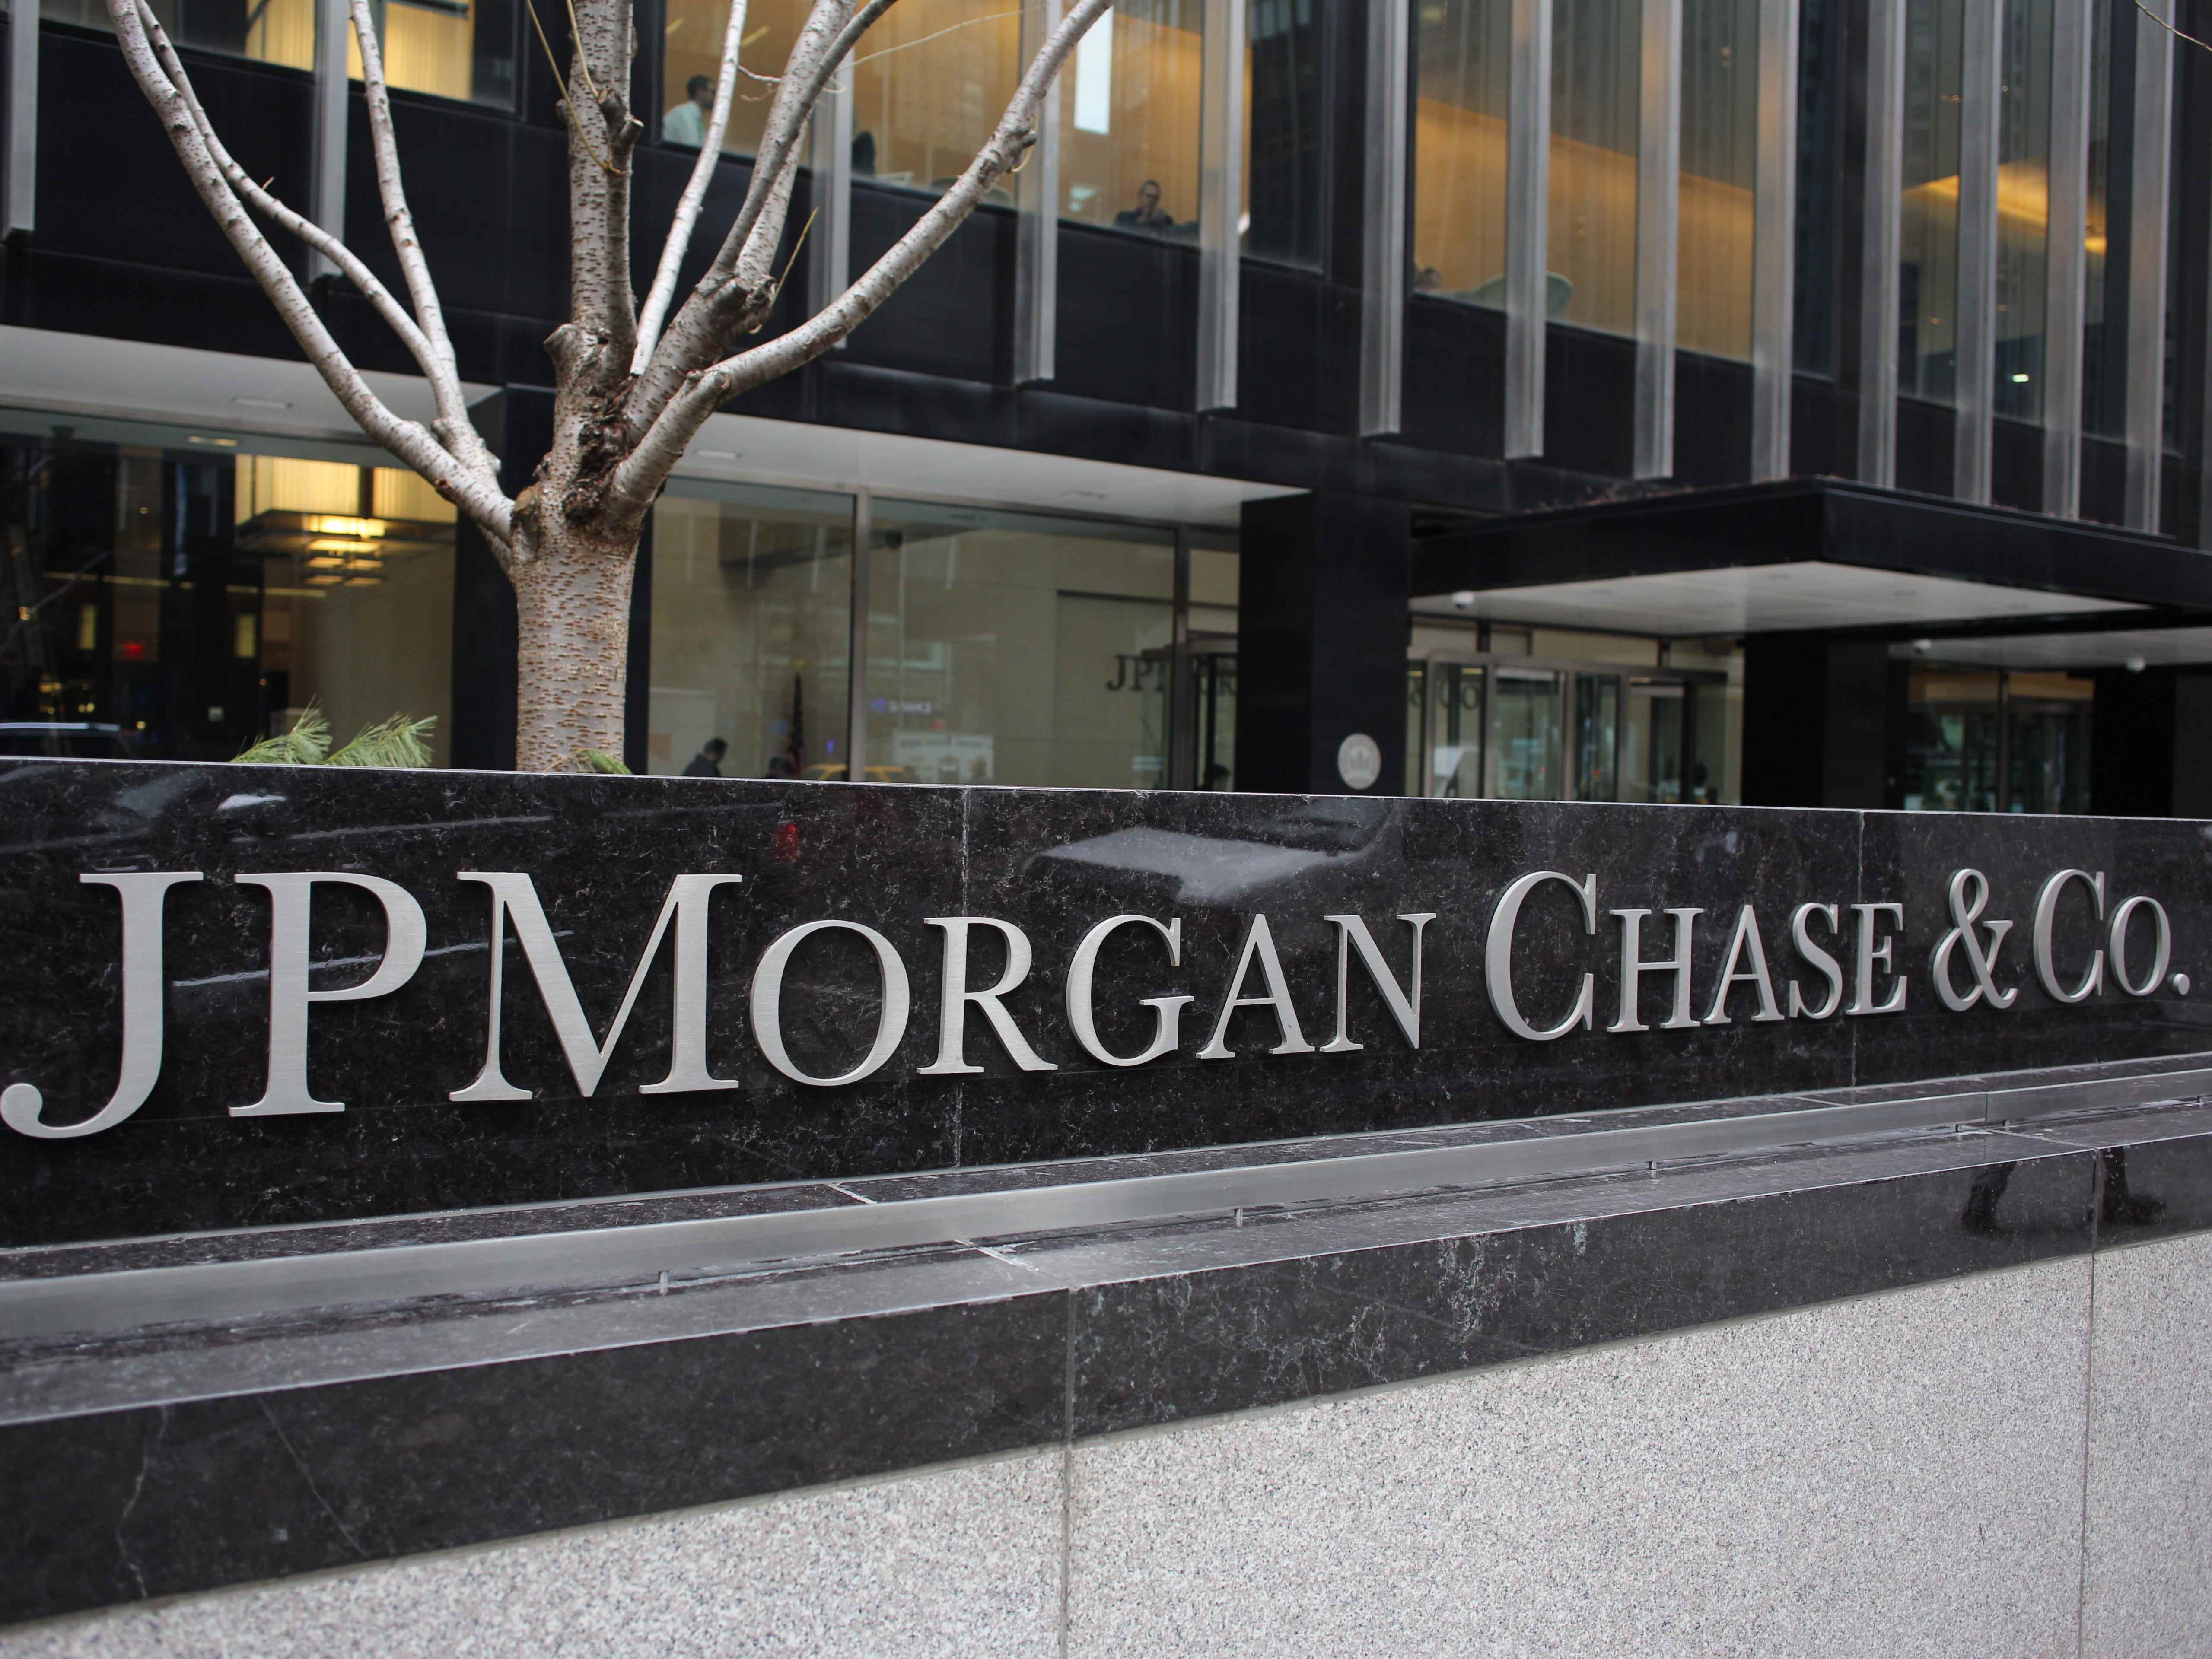 Der Hauptsitz von JP Morgan Chase & Co., der JP Morgan Chase Tower in der Park Avenue, Midtown, Manhattan, New York.